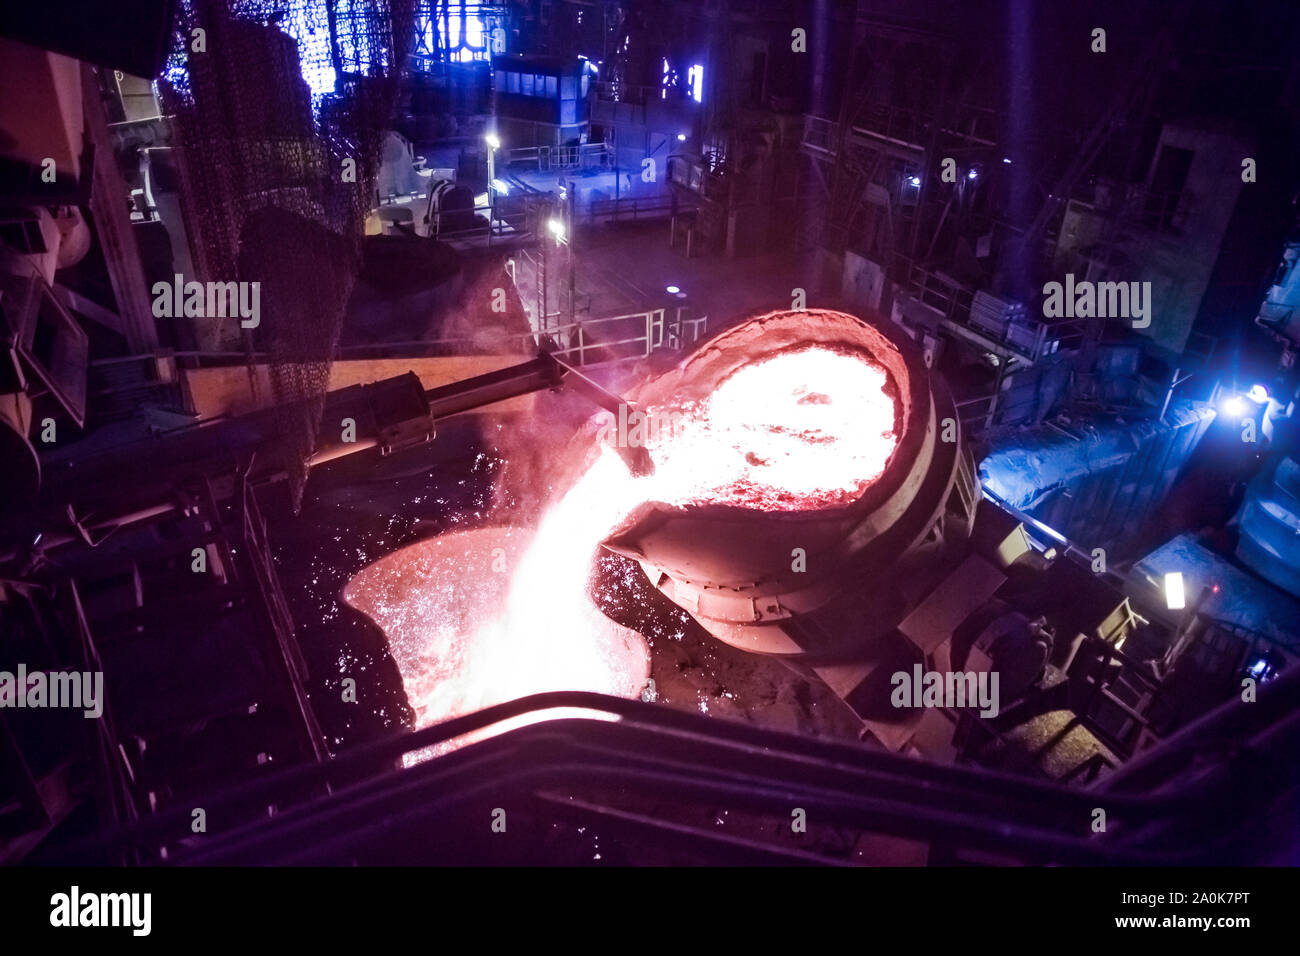 Fond de la chaudière du fer dans l'intérieur d'une industrie de l'acier Banque D'Images